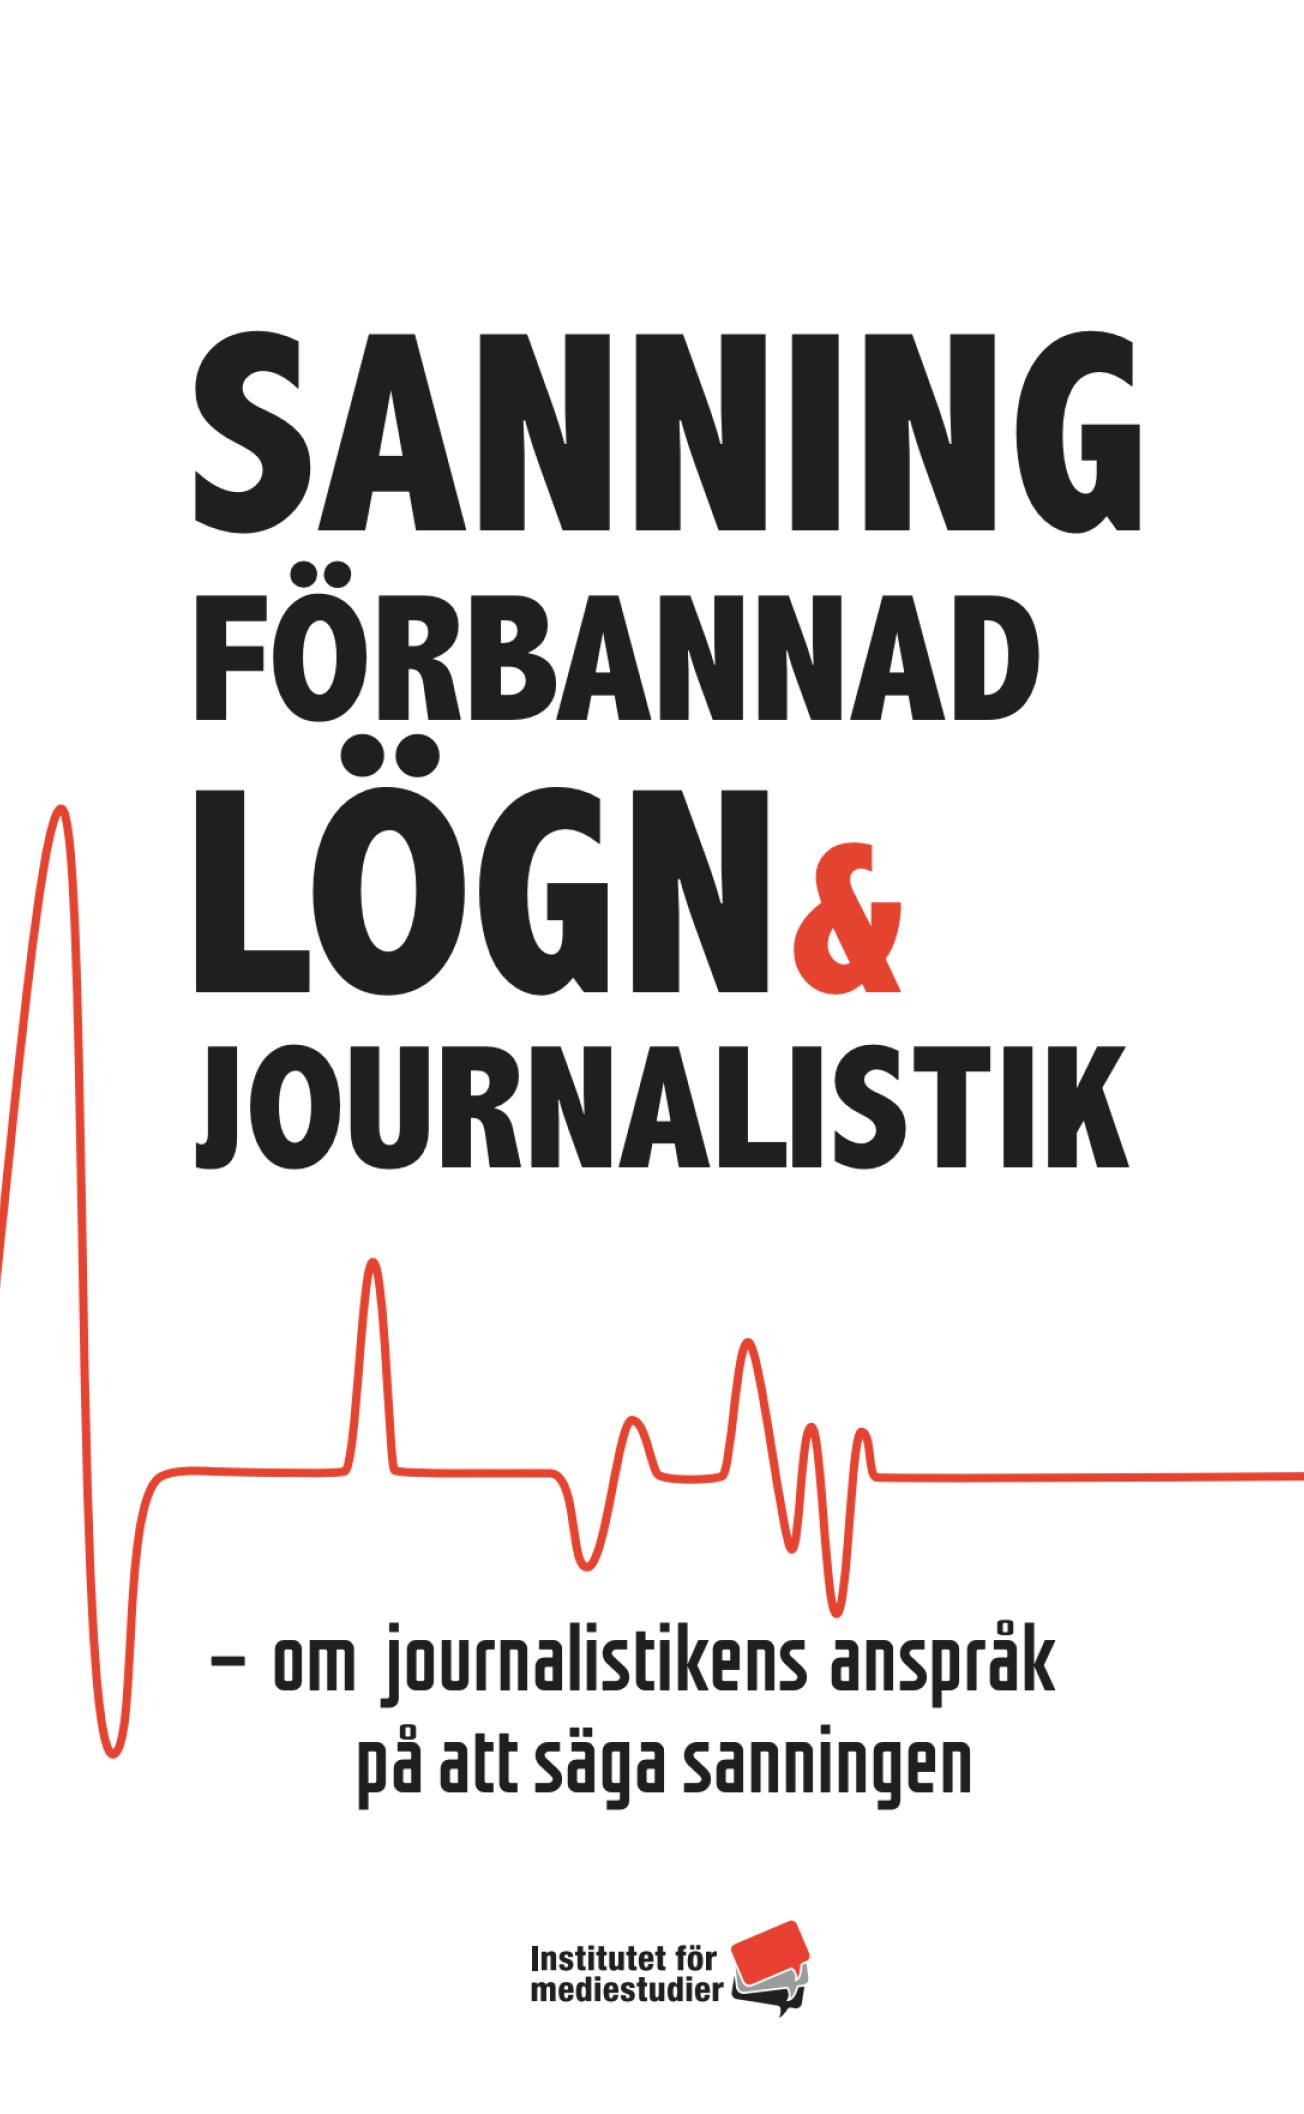 Report: Sanning, förbannad lögn & journalistik cover image